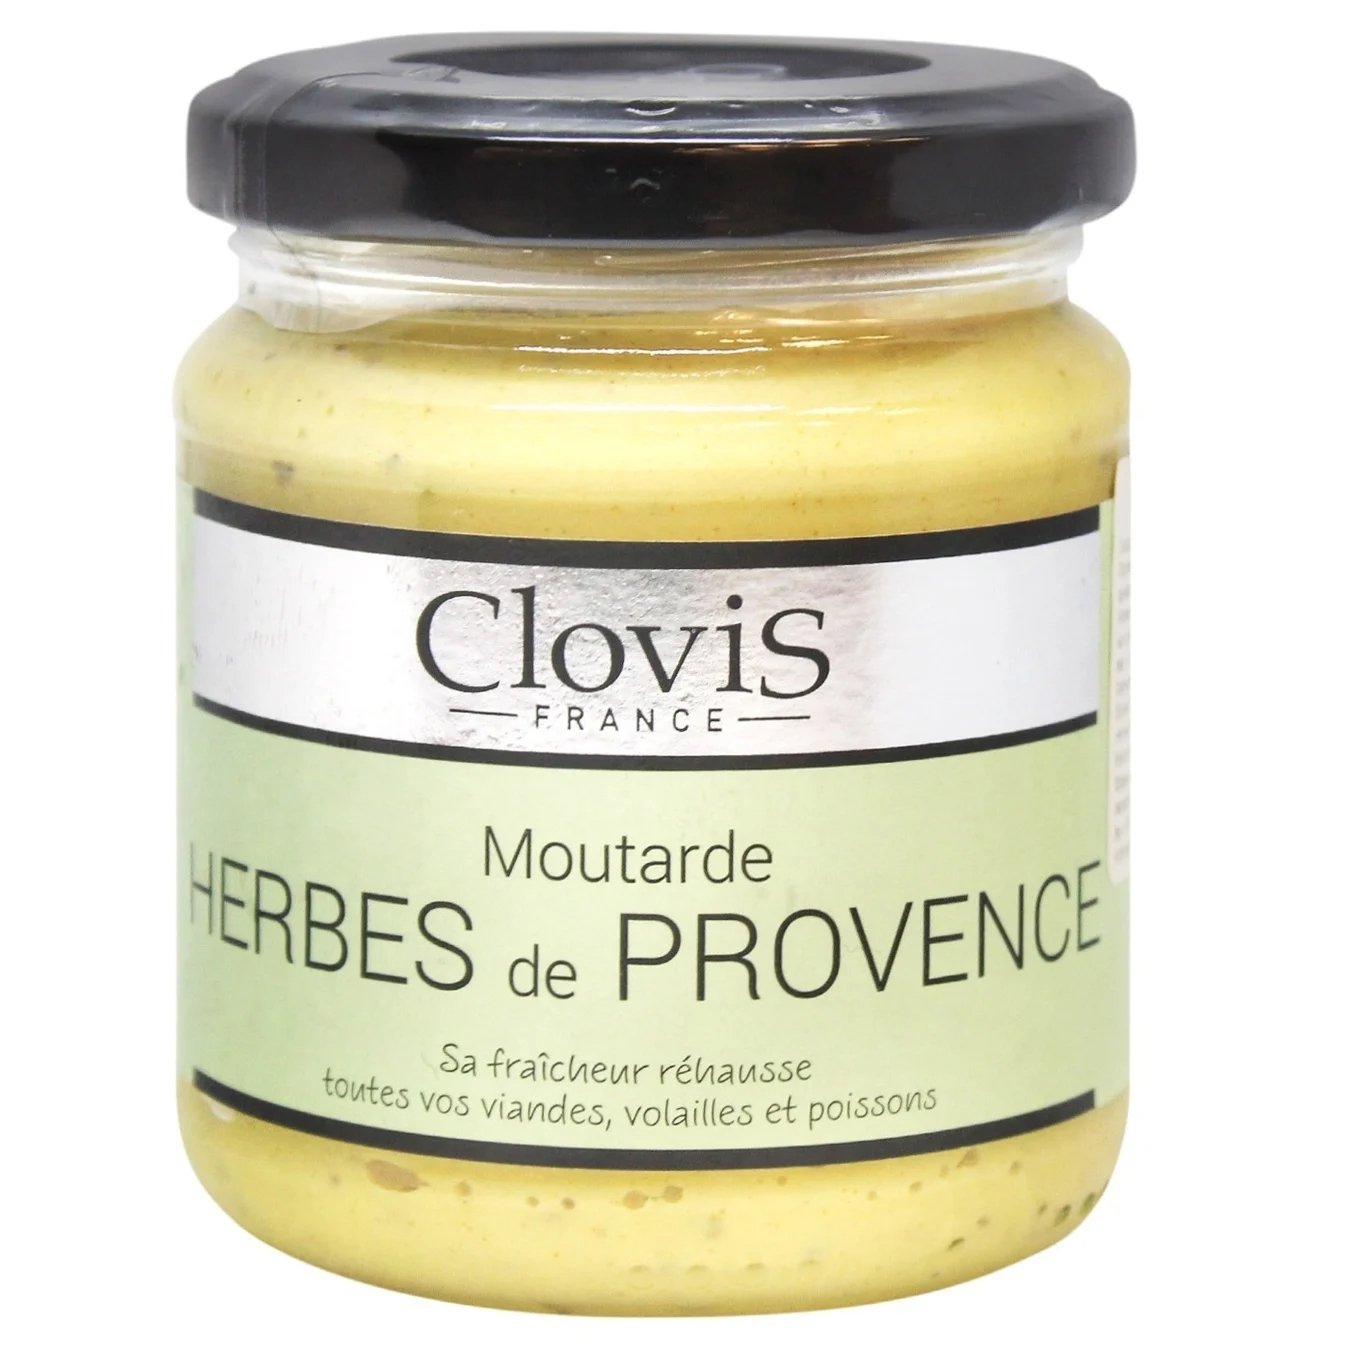 Горчица Clovis Moutarde Herbes de Provence с прованскими травами 200 г - фото 1